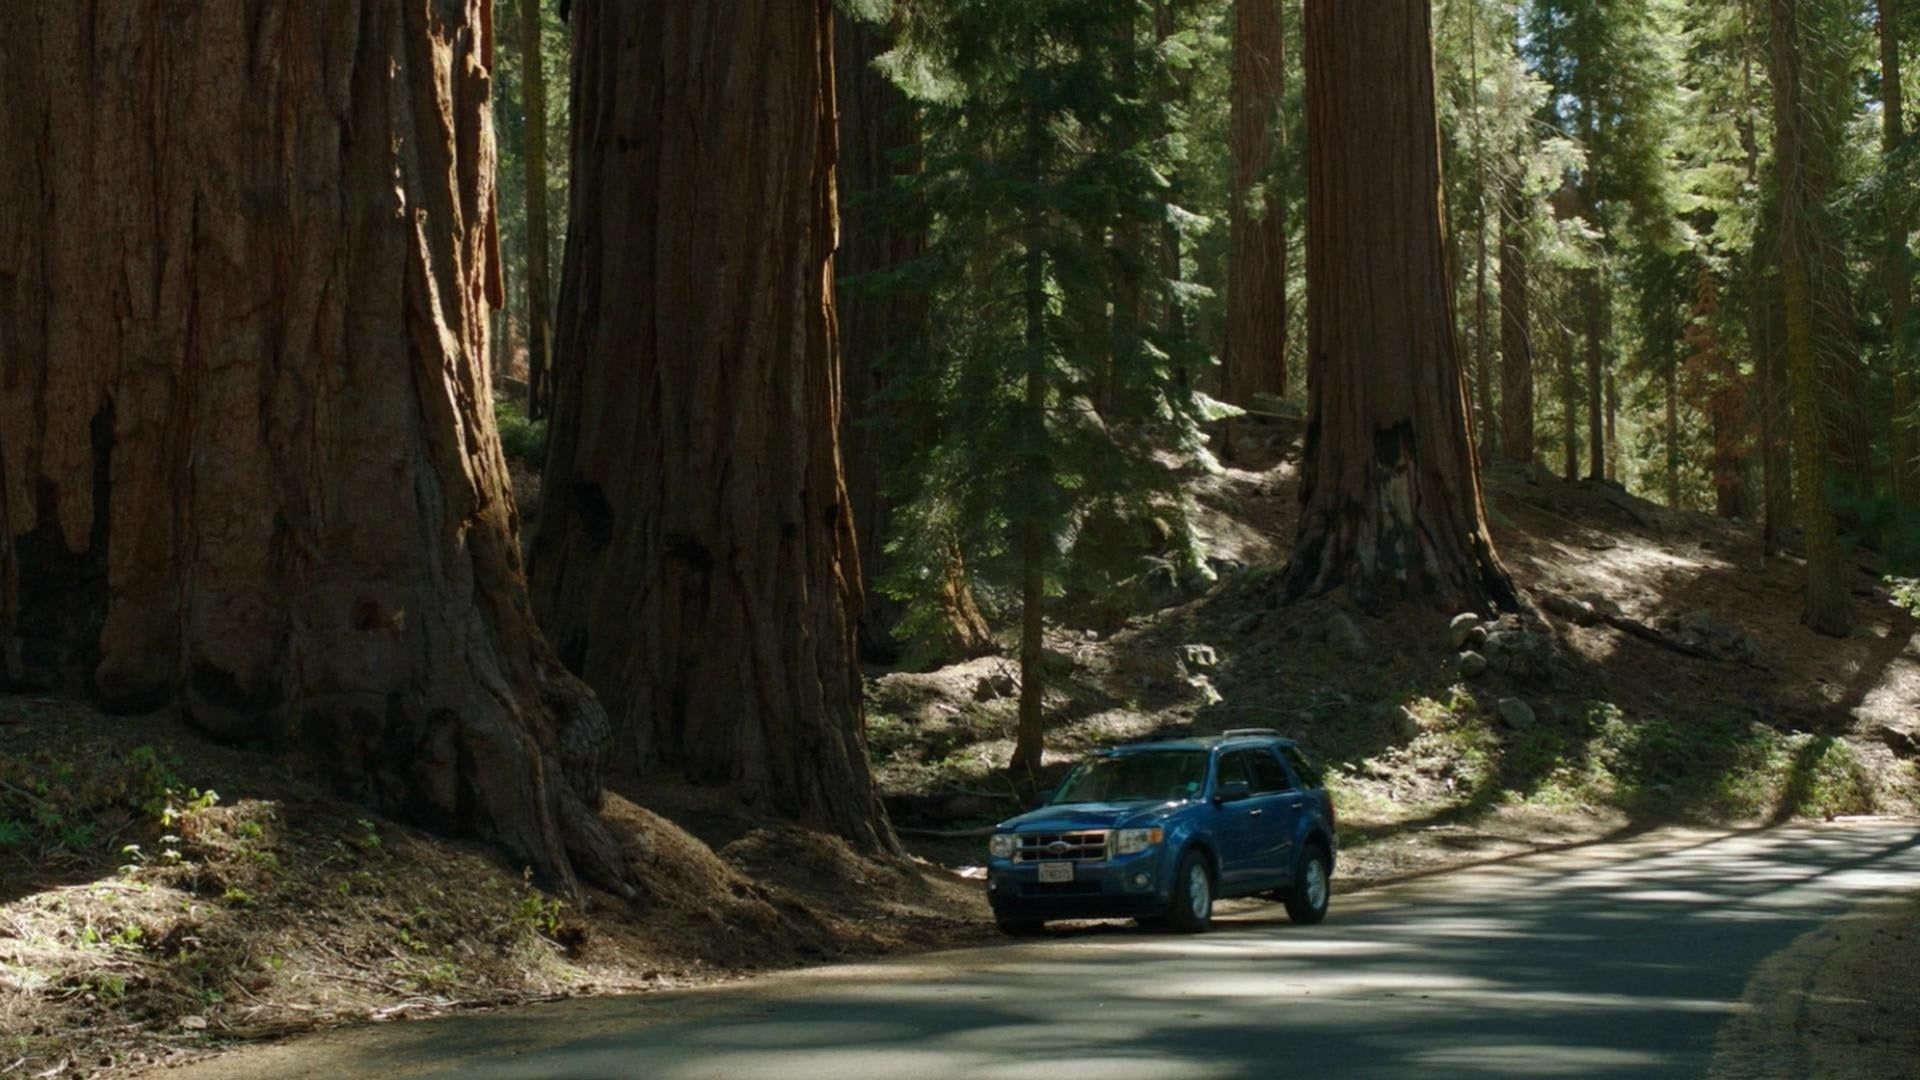 Sequoia background